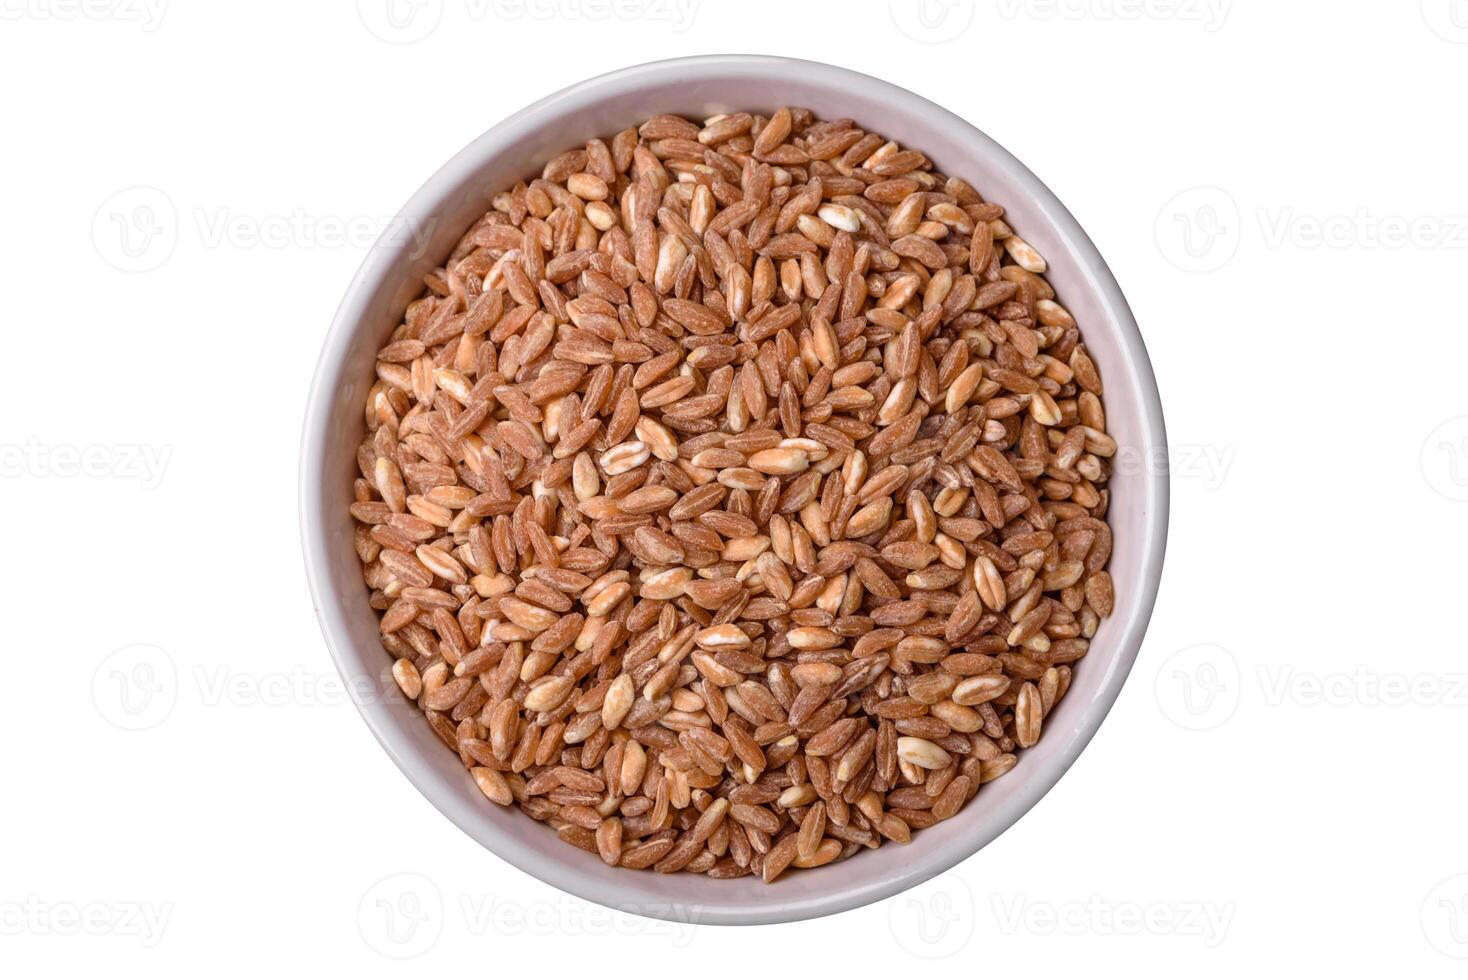 ampla grãos do trigo mingau estão Castanho dentro cor quando cru foto